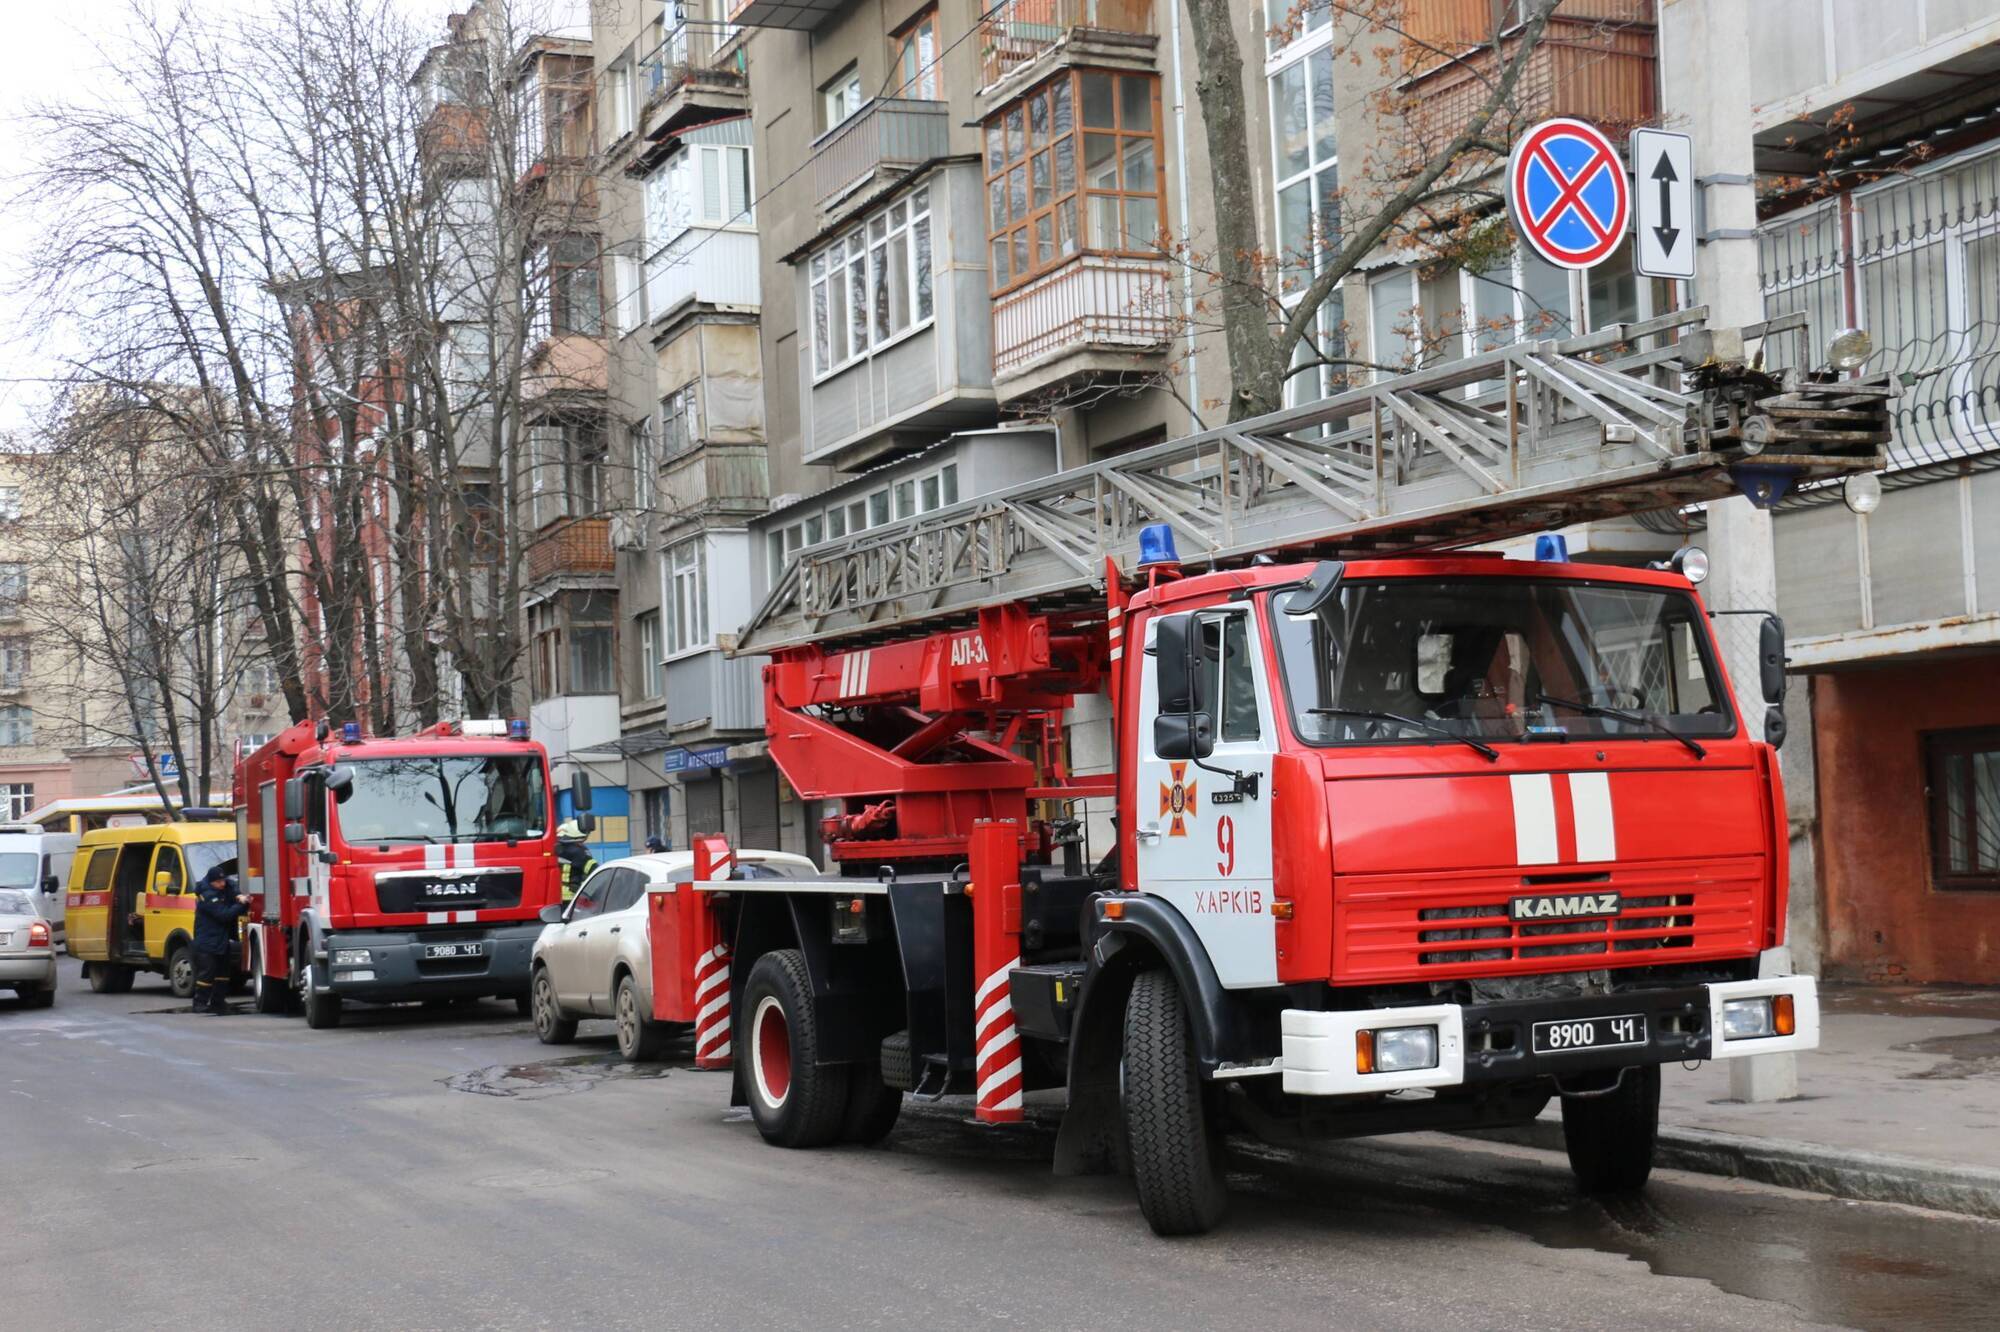 м. Харків: під час пожежі у шестиповерховому будинку вогнеборці евакуювали з небезпечної зони 7 мешканців